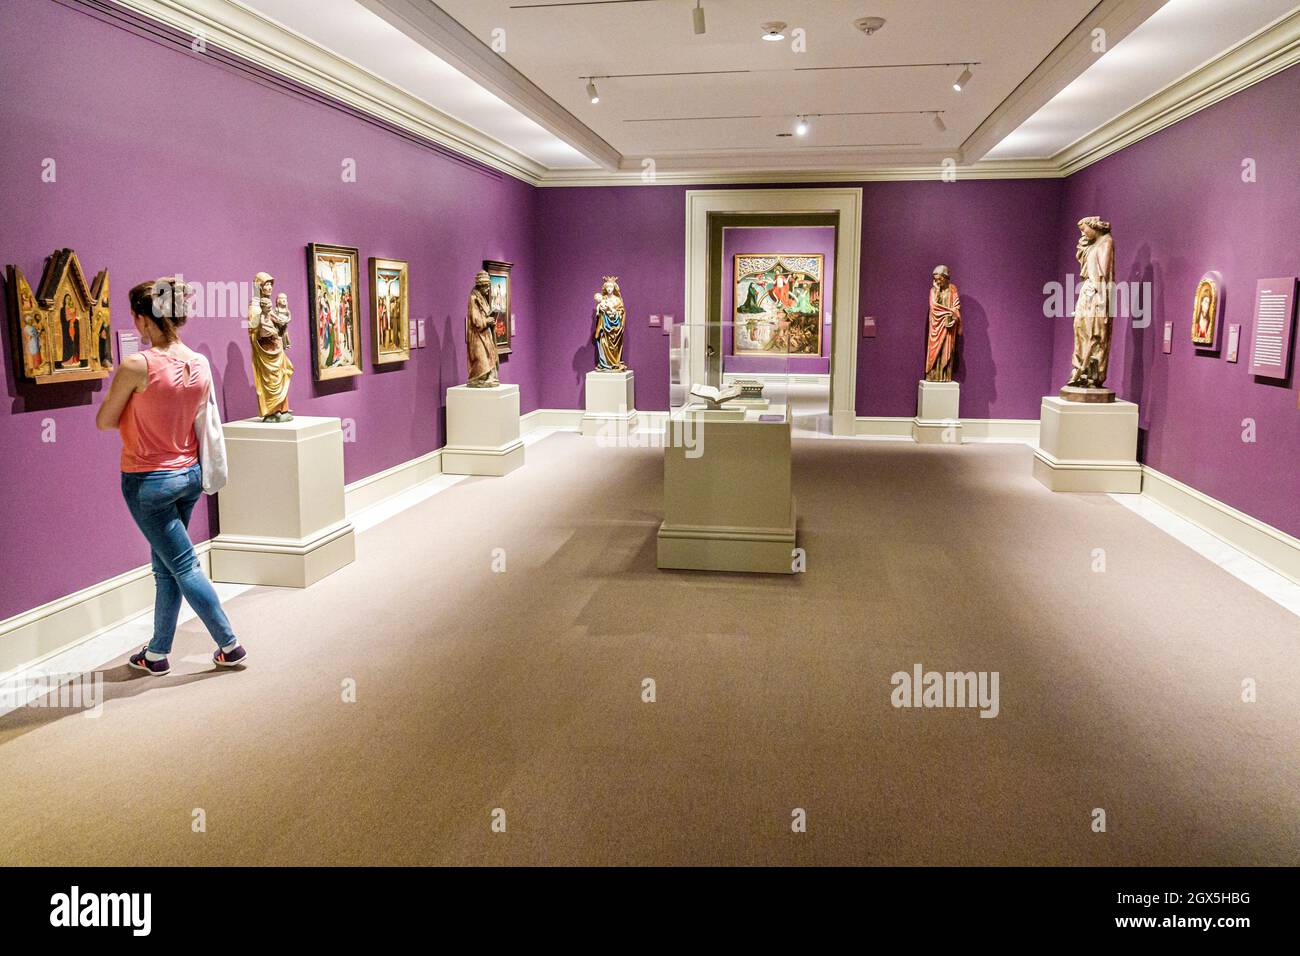 Norfolk Virginia, Chrysler Museum of Art, Ausstellung Sammlung Europäische Gemälde Skulpturen Galerie innen Frau suchen Besucher Stockfoto